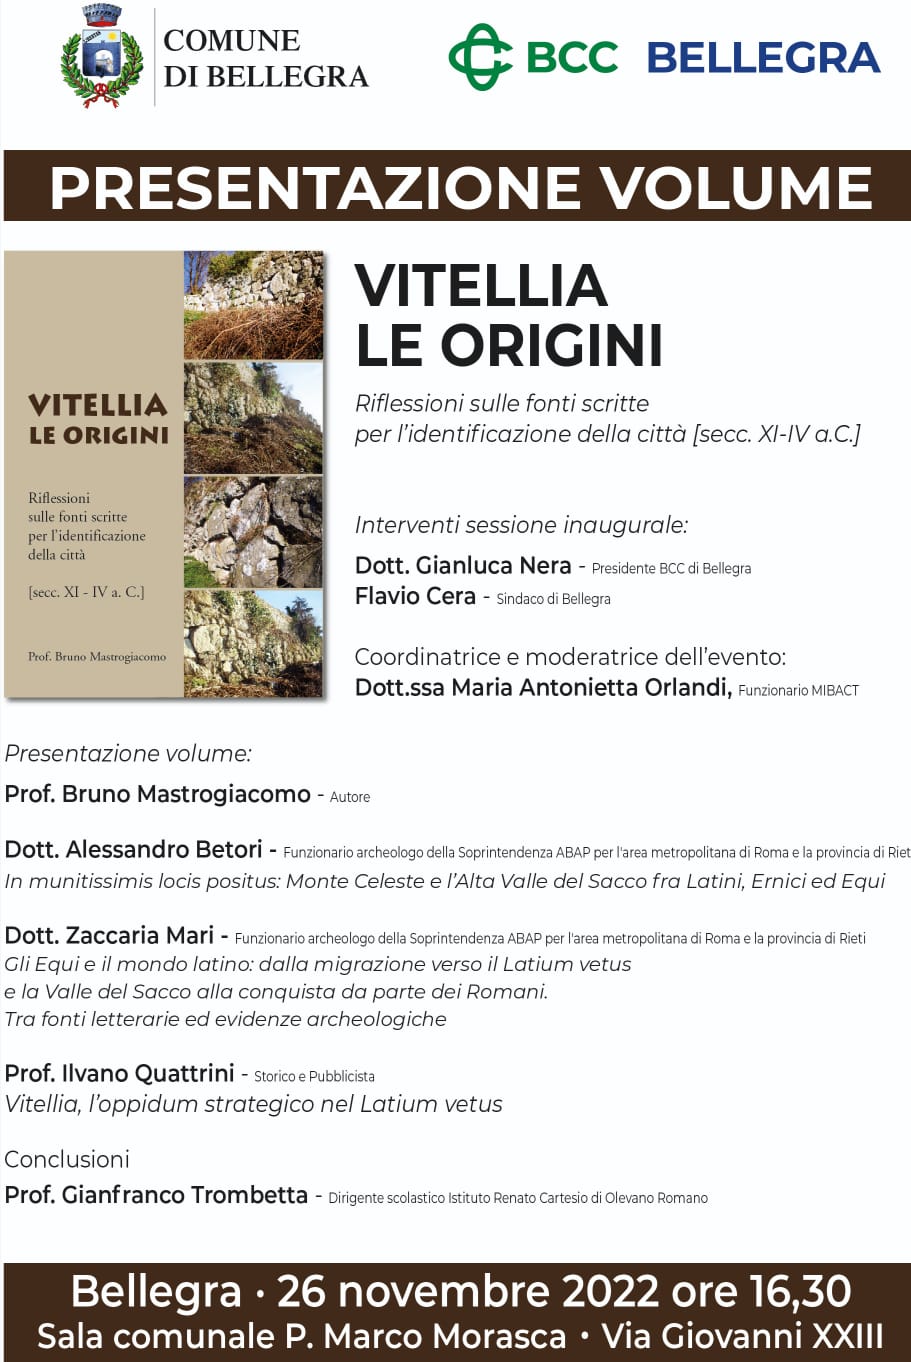 https://www.agenziaeventi.org/immagini_news/3264/bellegra-sabato-26-novembre-presentazione-del-volume-vitellia-le-origini-del-prof-bruno-mastrogiacomo-3264.jpg